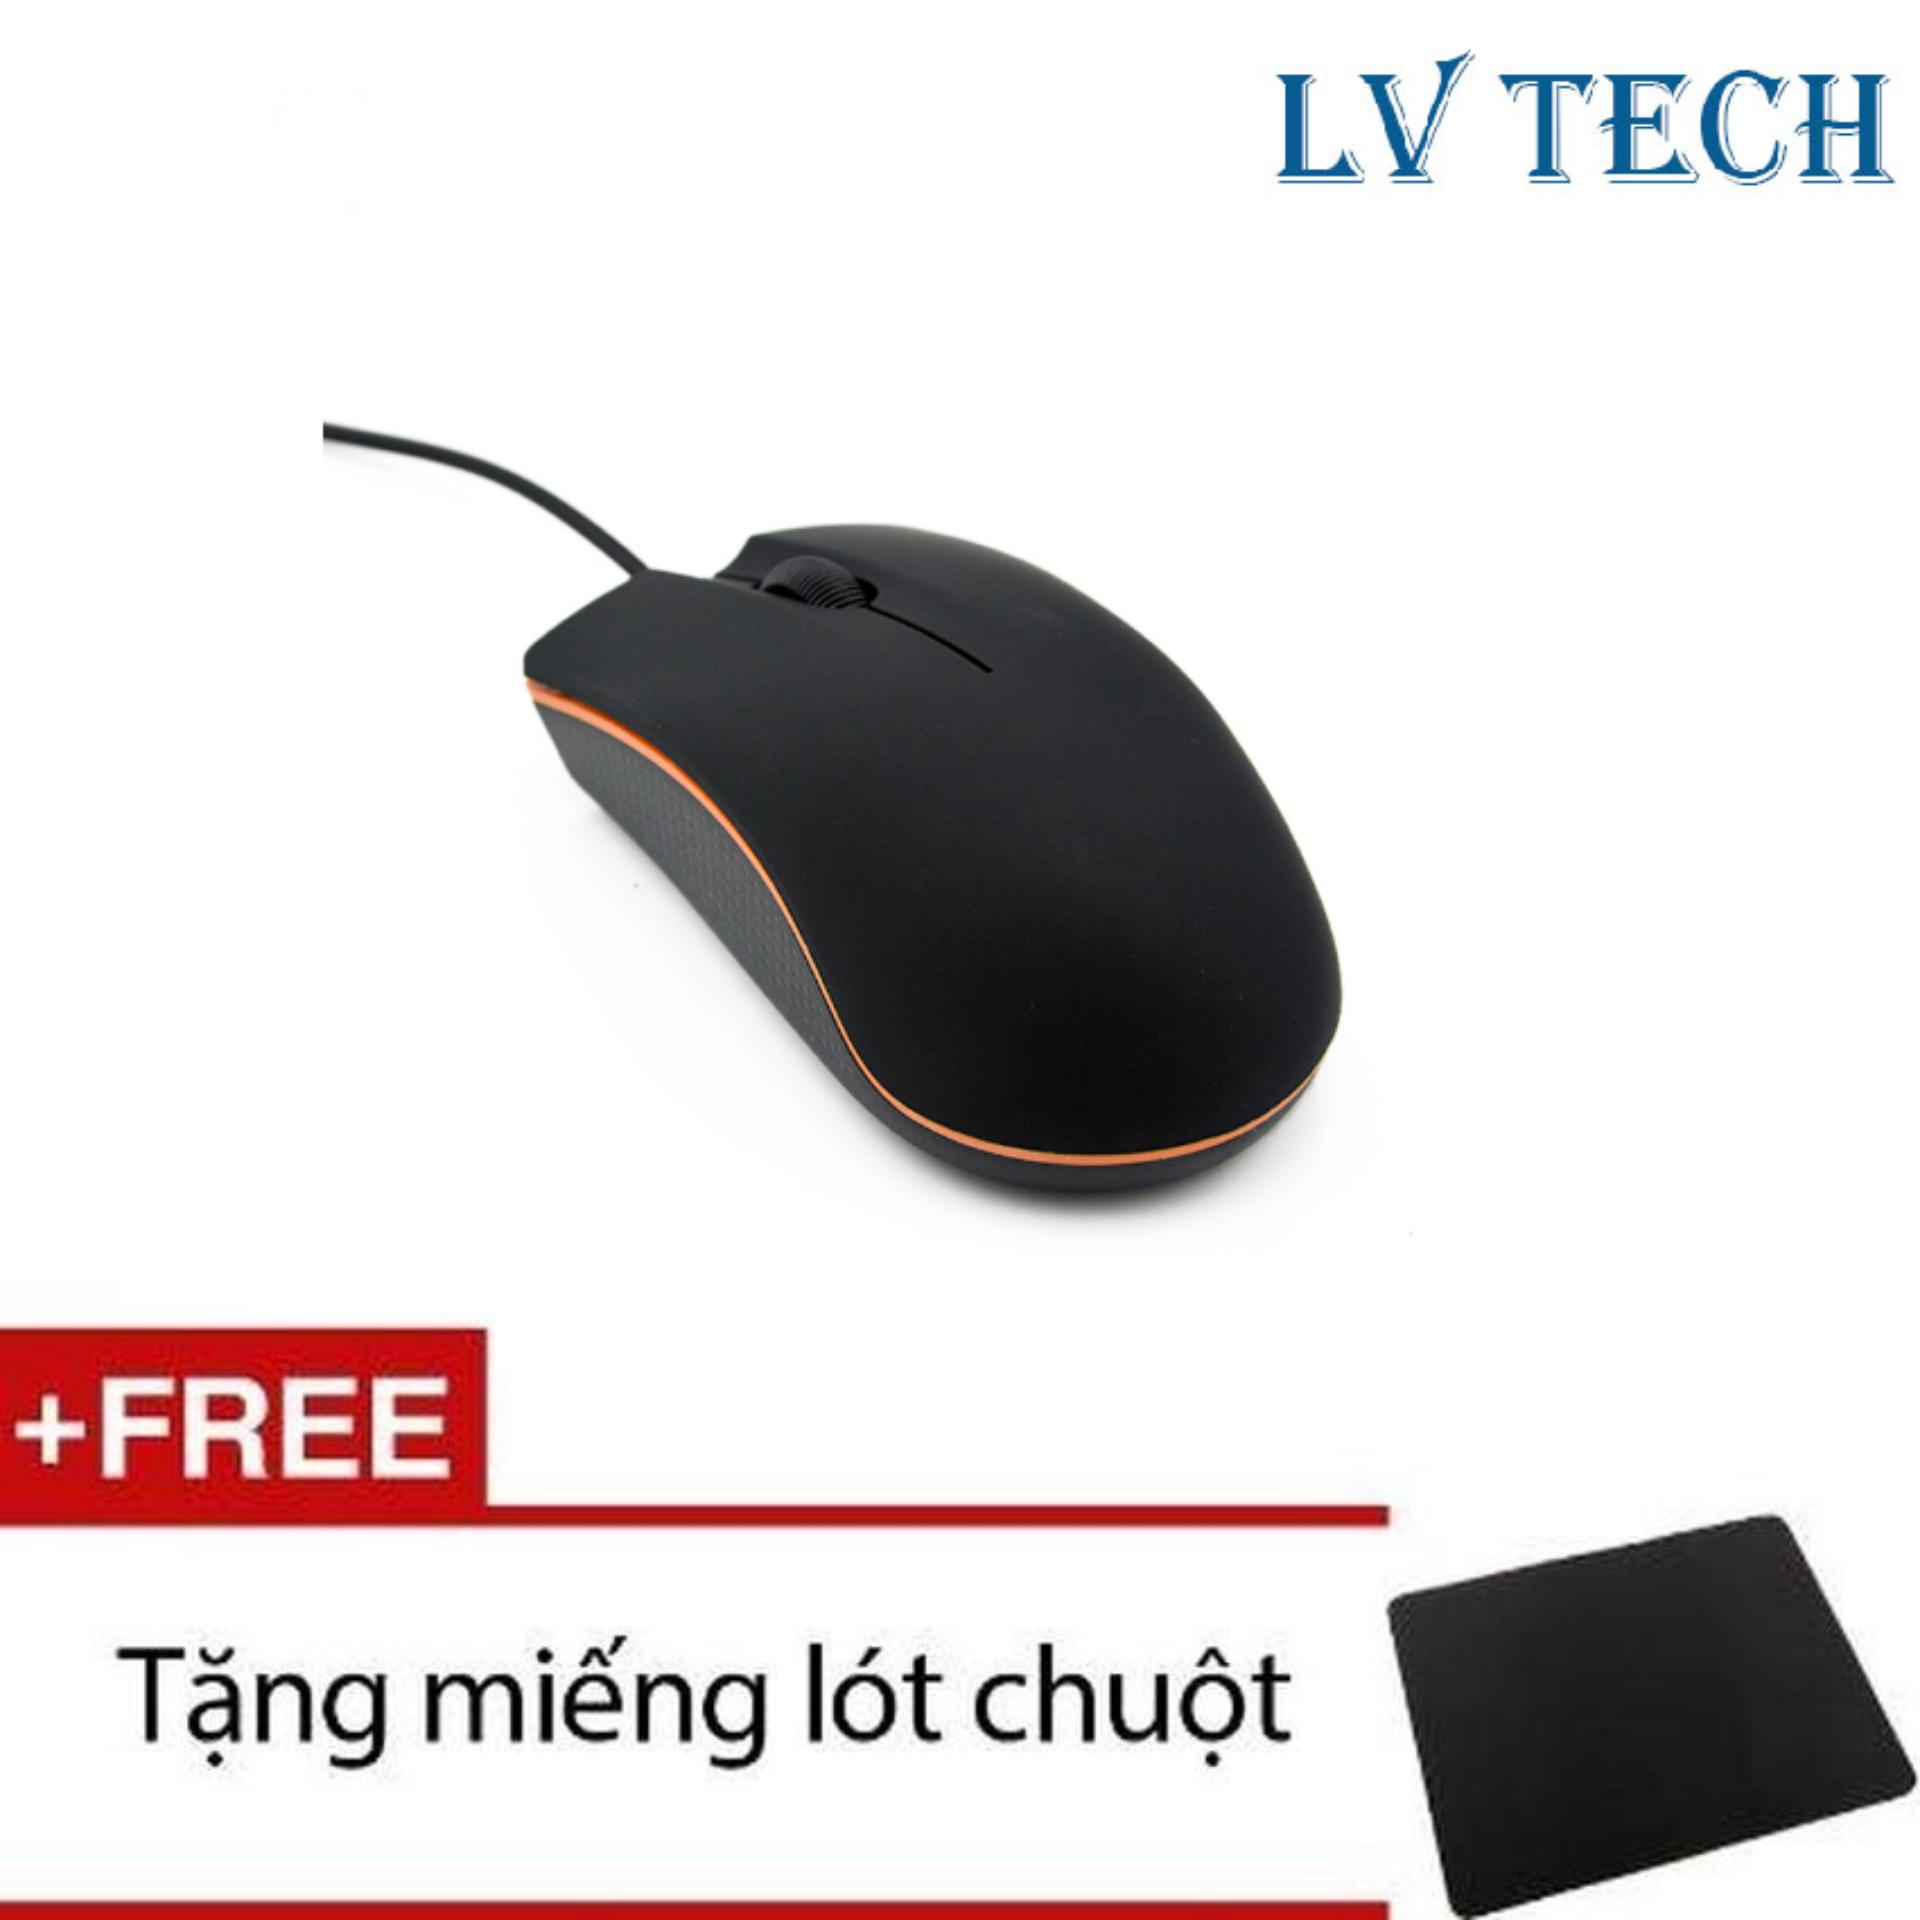 Chuột quang có dây LVTech Mini M20 (Đen) + Tặng 1 tấm lót chuột